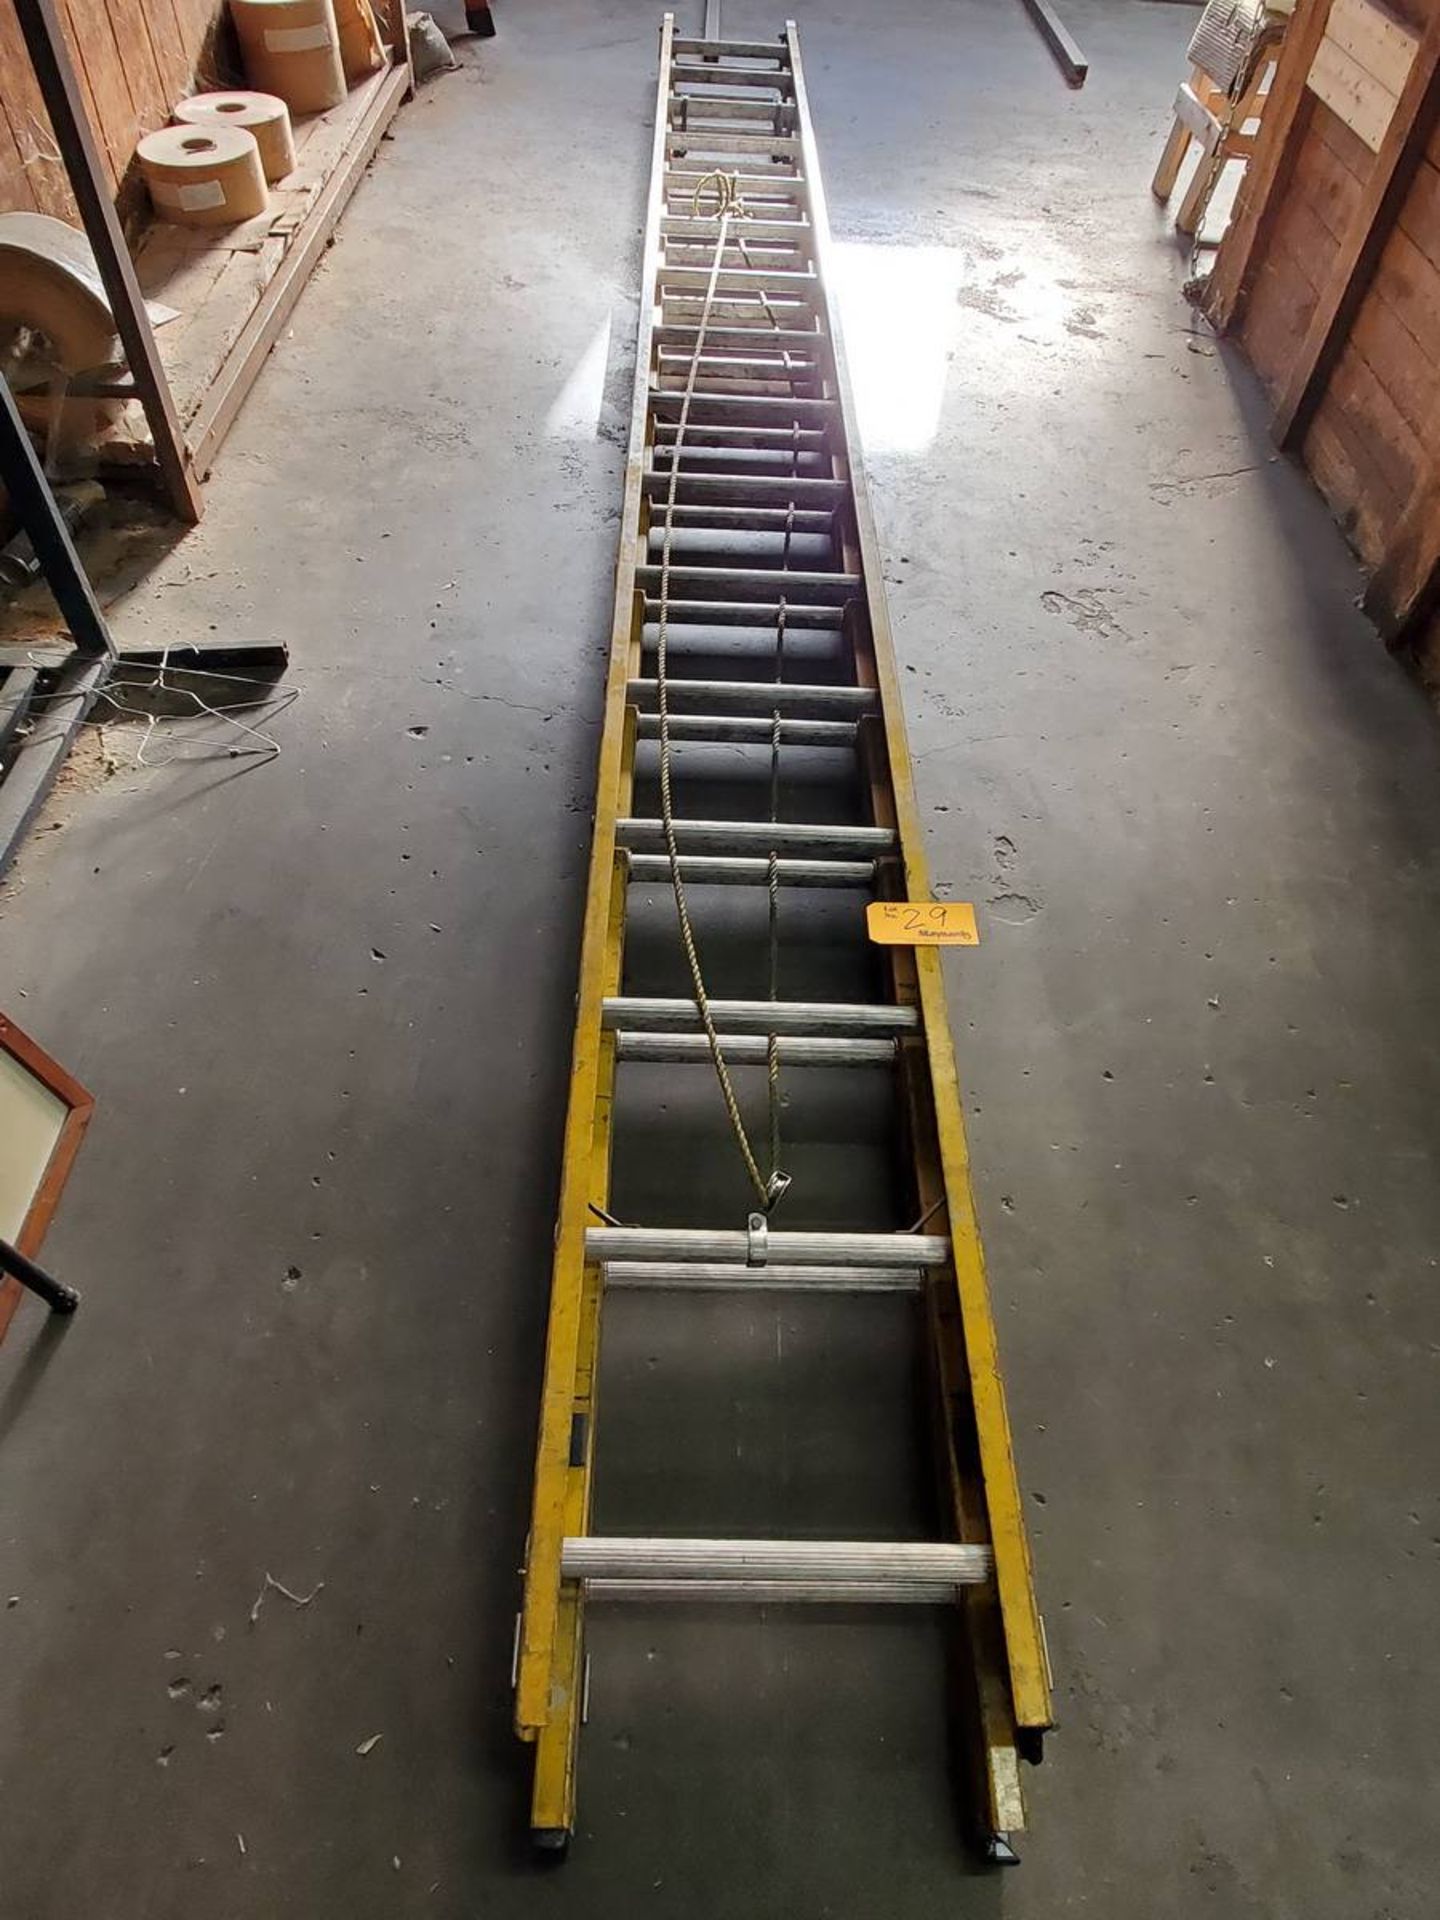 Bauer Ladder